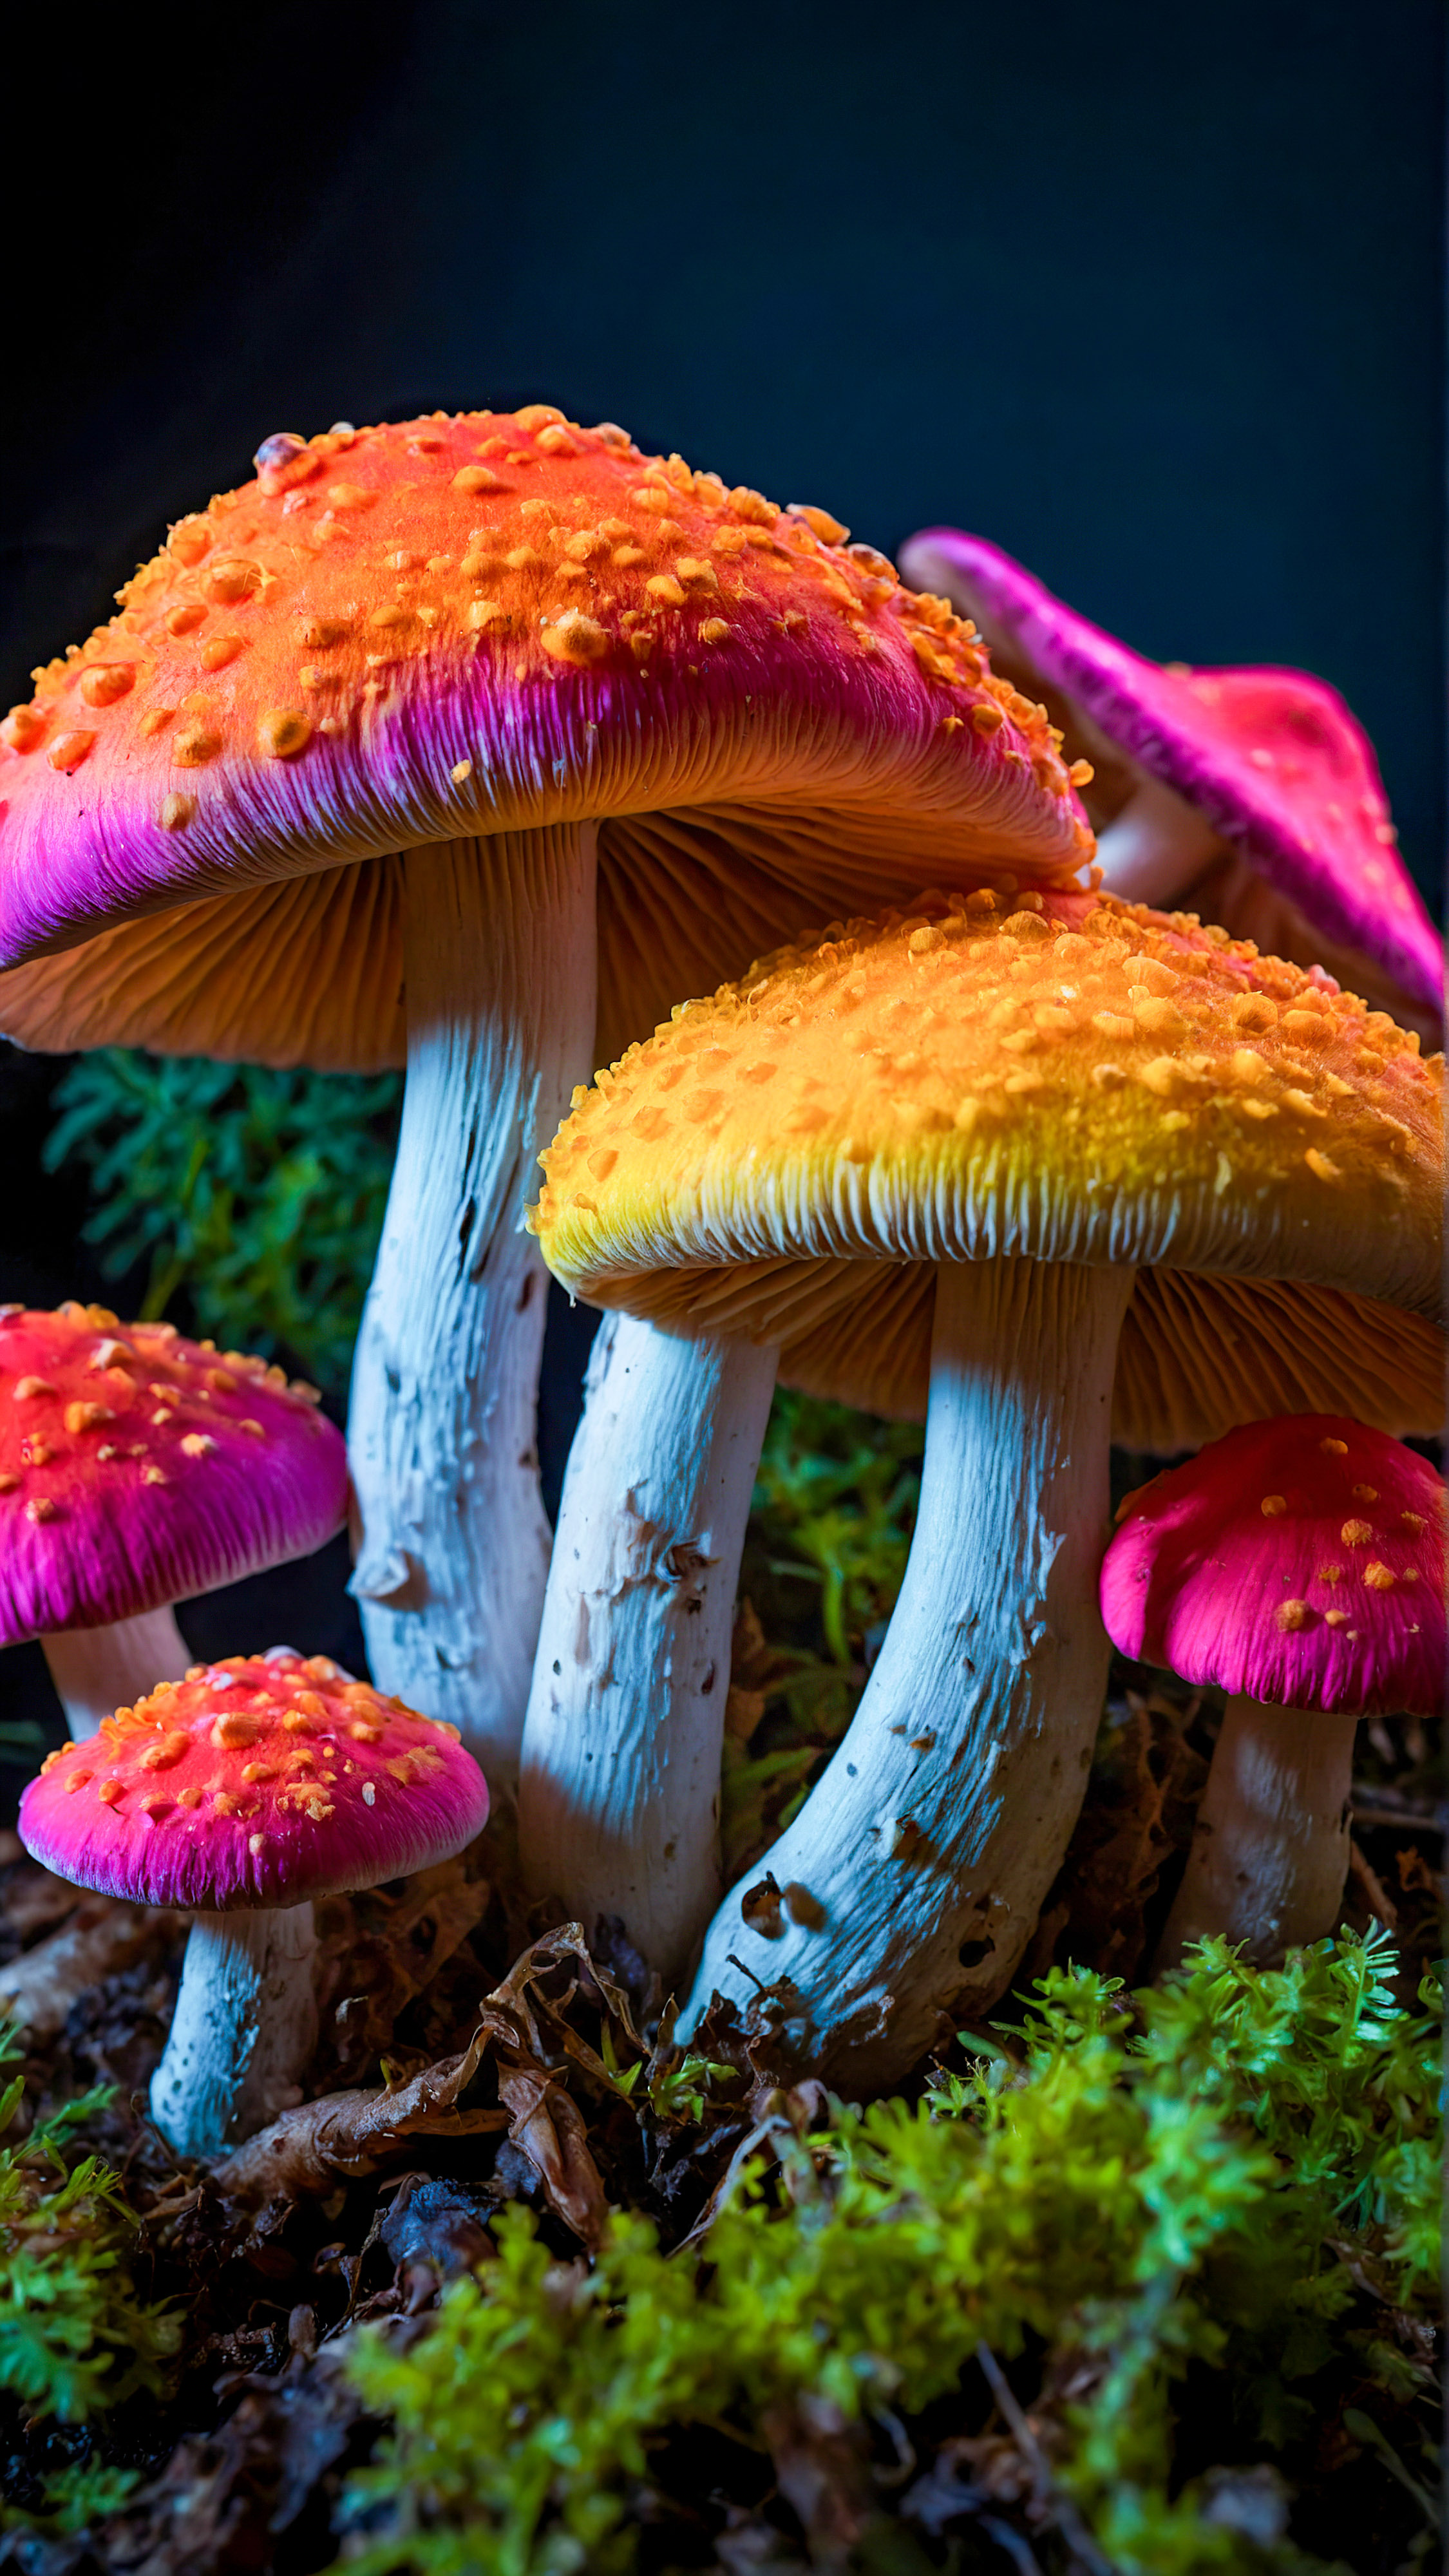 Laissez-vous hypnotiser par nos fonds d'écran iPhone style 4K gratuits, présentant un groupe de champignons aux couleurs vives et néon sur un fond sombre, créant un effet visuellement frappant et surréaliste.